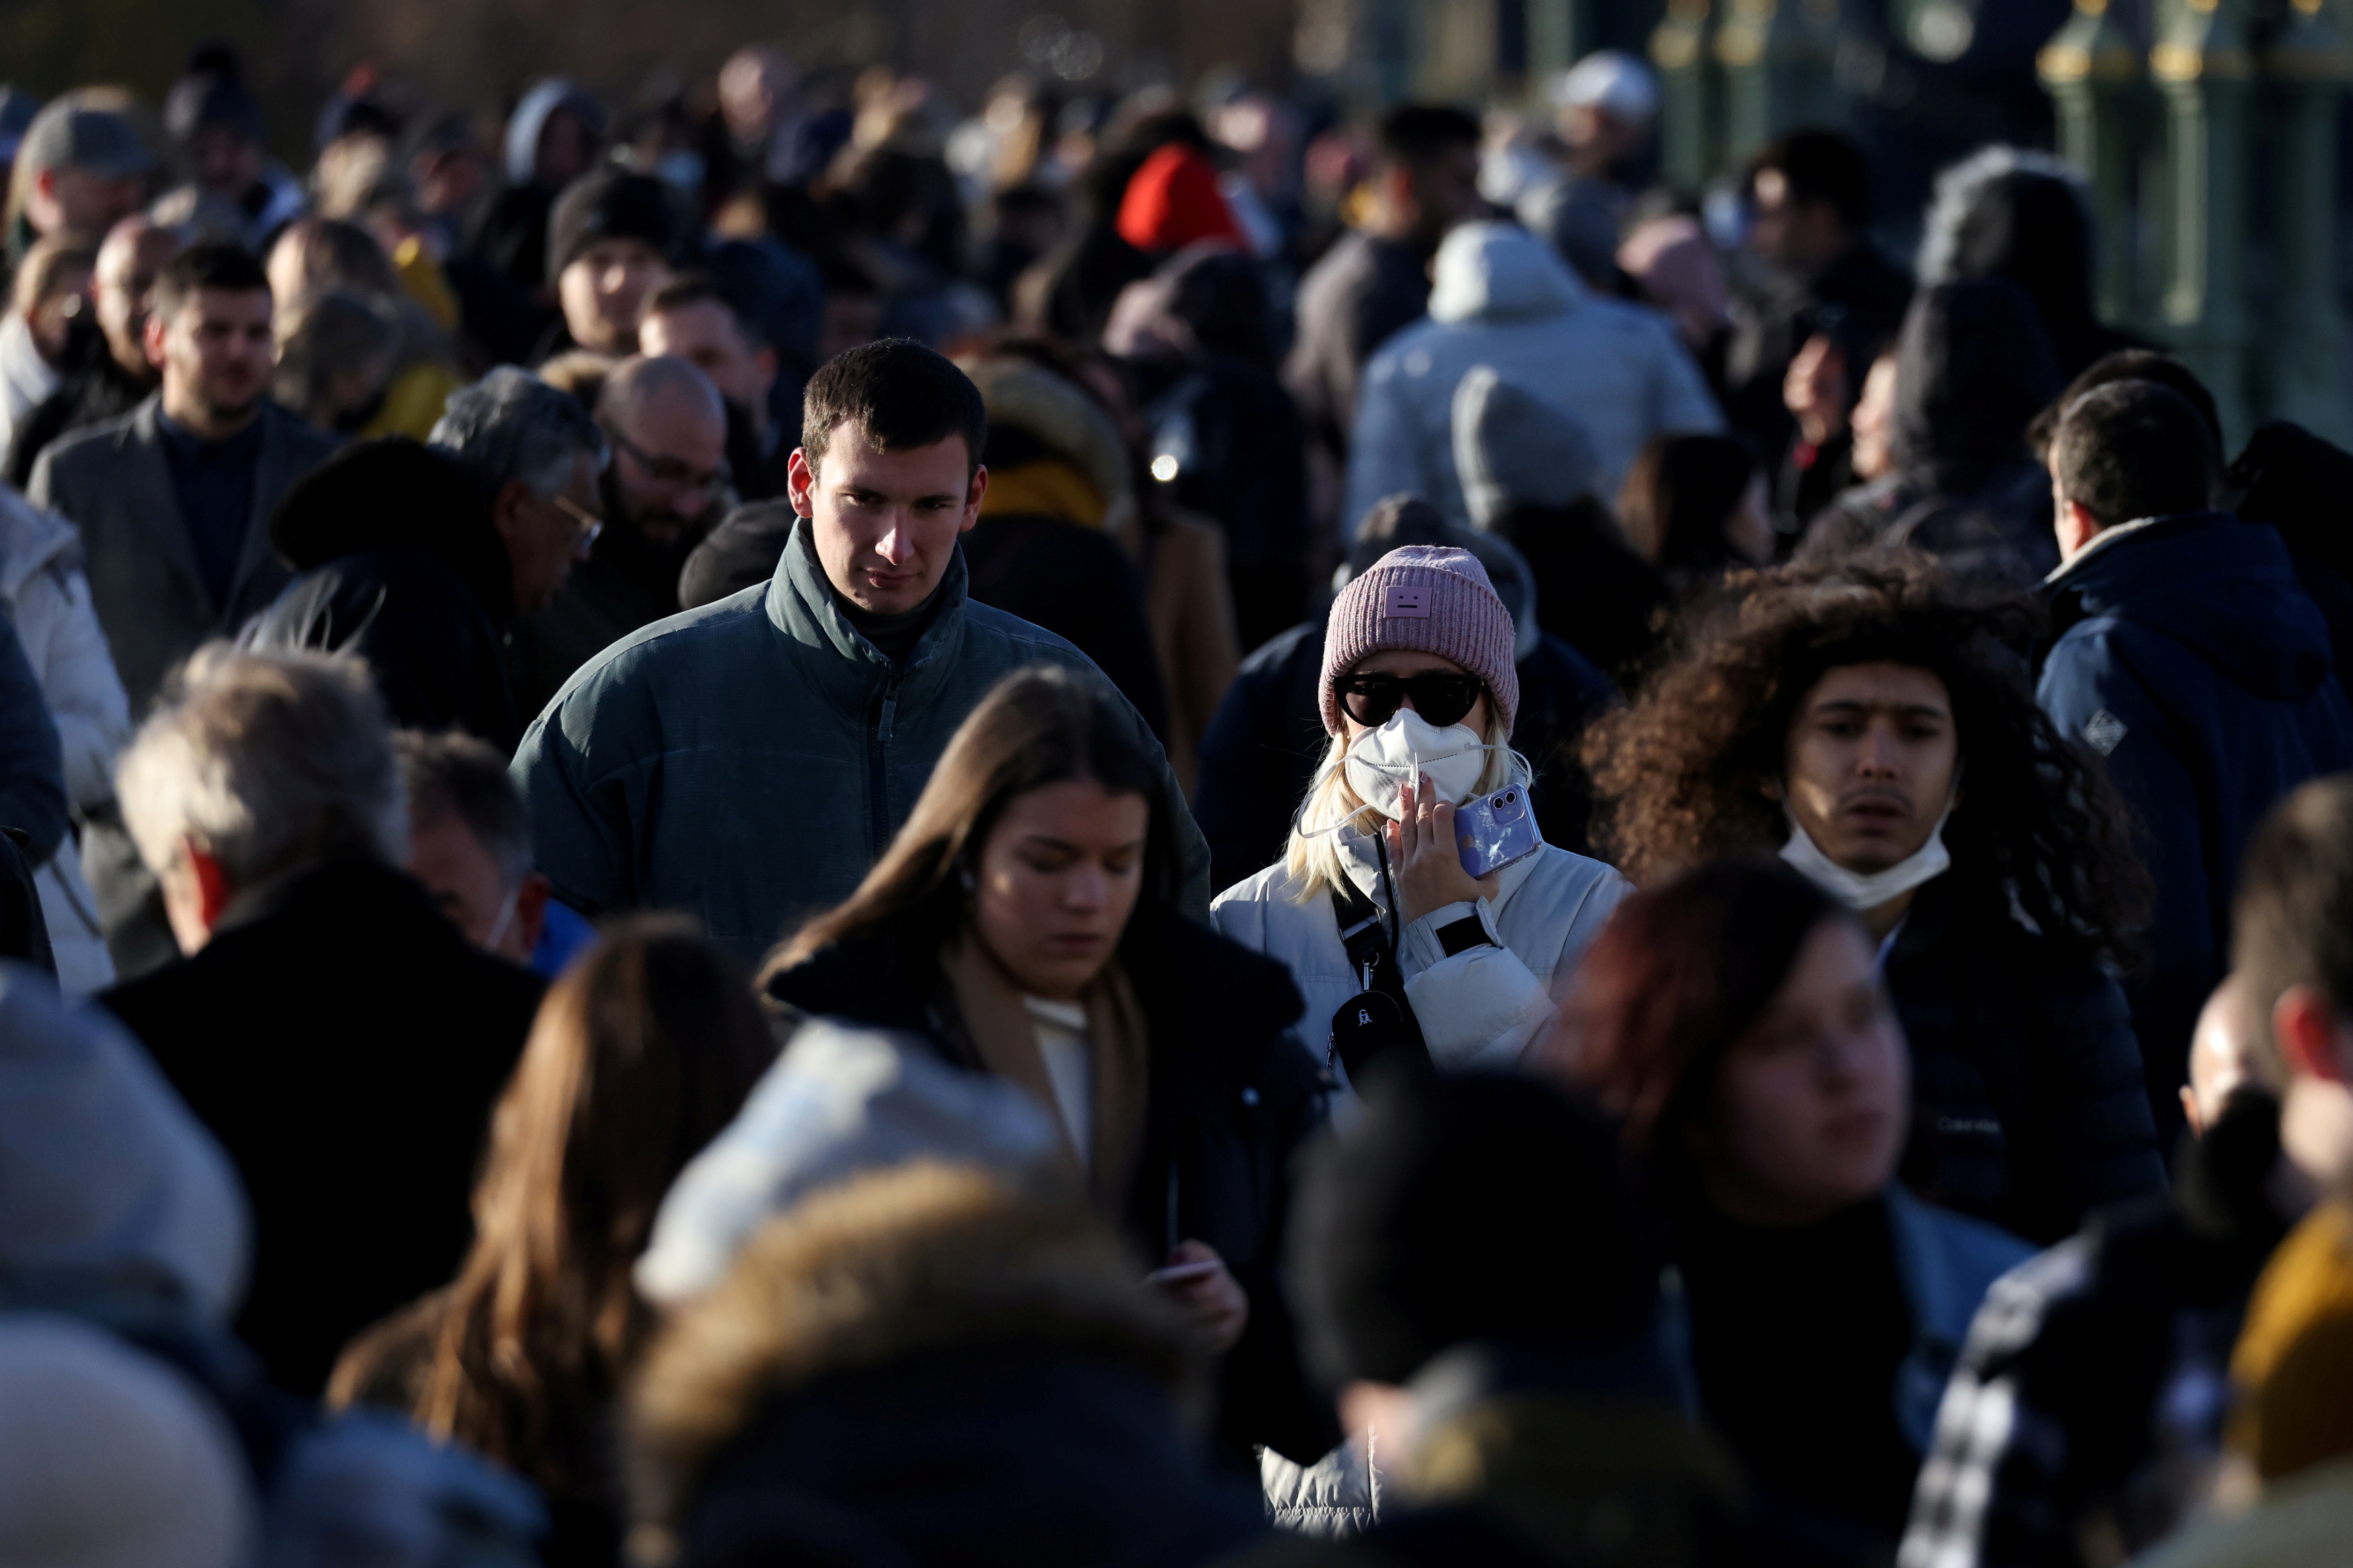 La gente camina por el puente de Westminster tras el anuncio de nuevas medidas debido a la variante del coronavirus Ómicron, en Londres, Gran Bretaña, el 28 de noviembre de 2021. (REUTERS / Tom Nicholson)